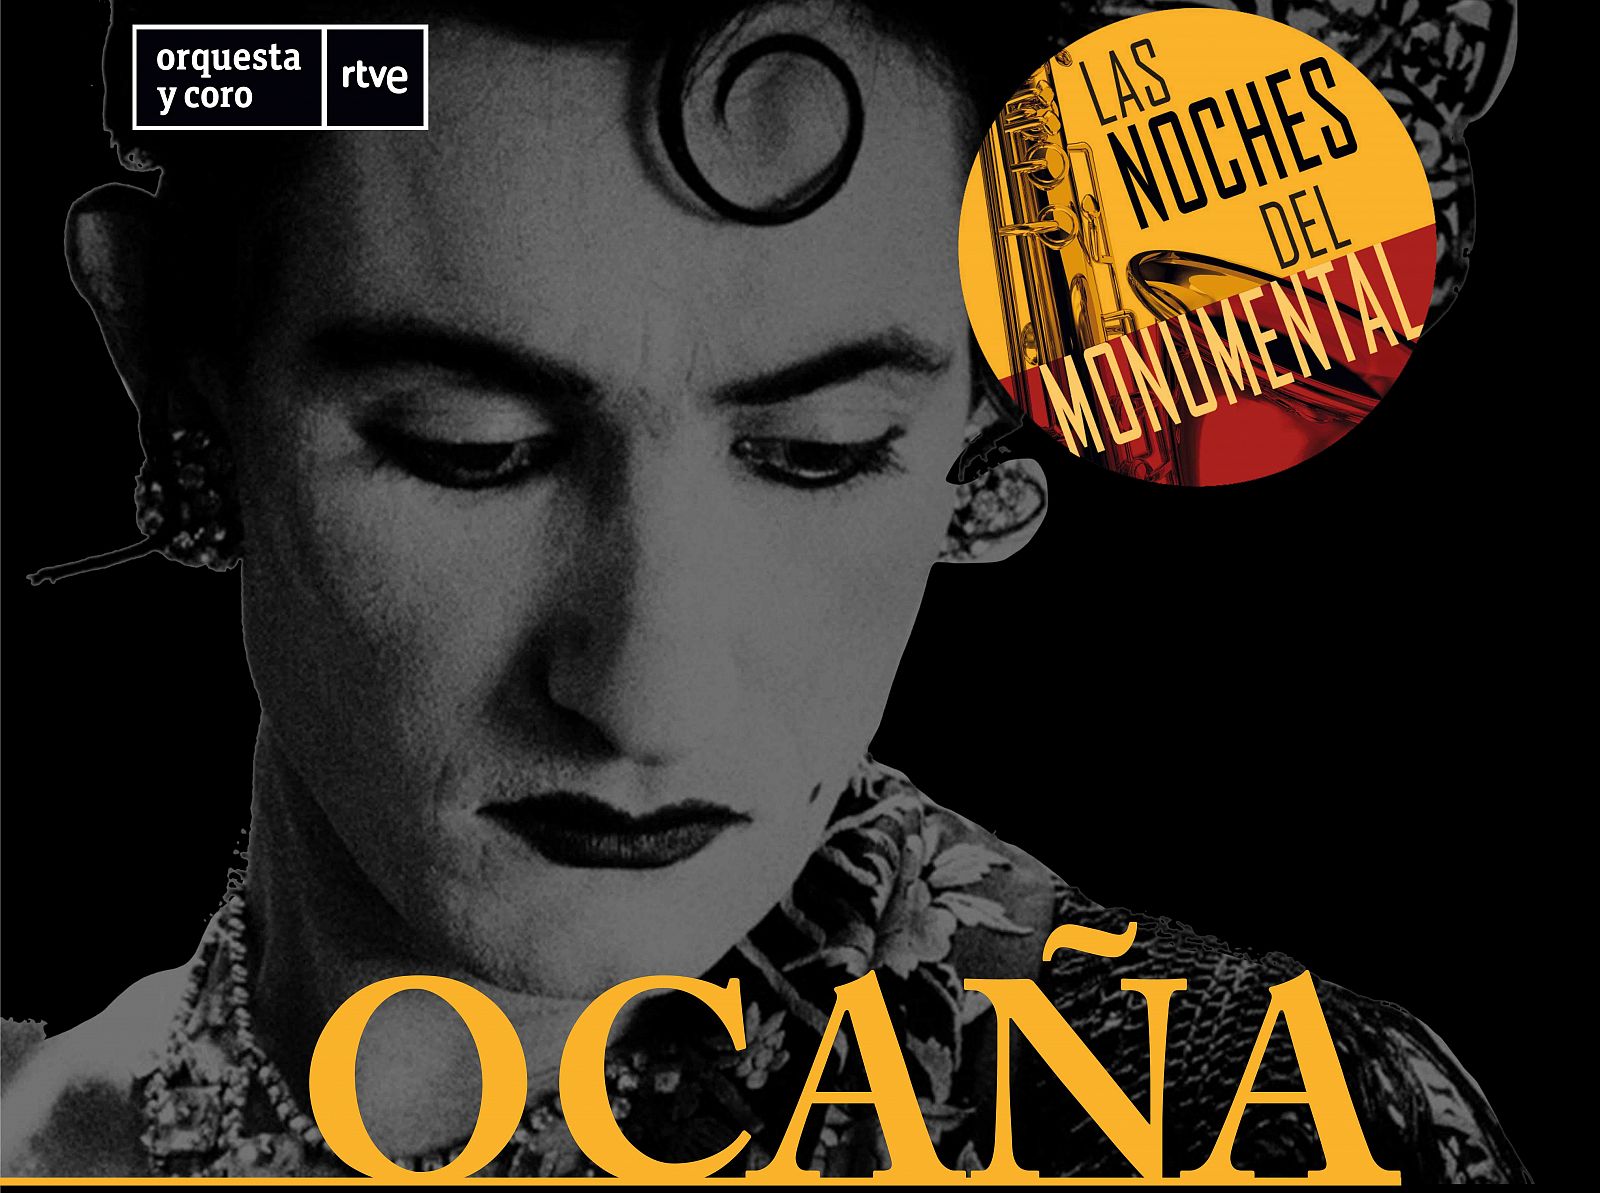 'Ocaa, copla de libertad', se presenta y estrena en Las noches del Monumental